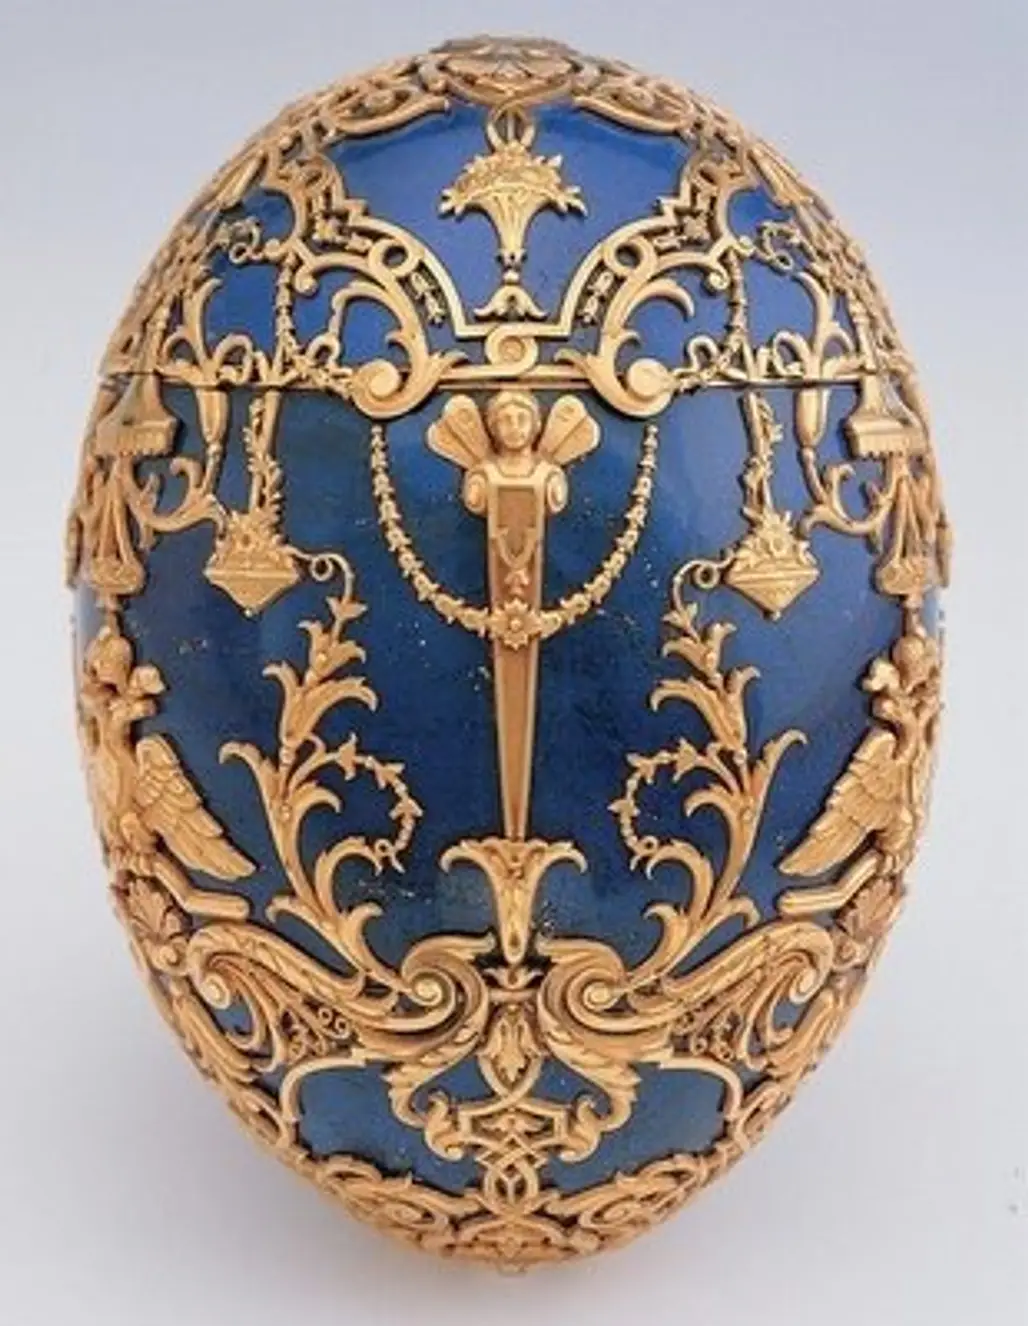 The Tzarevich Egg